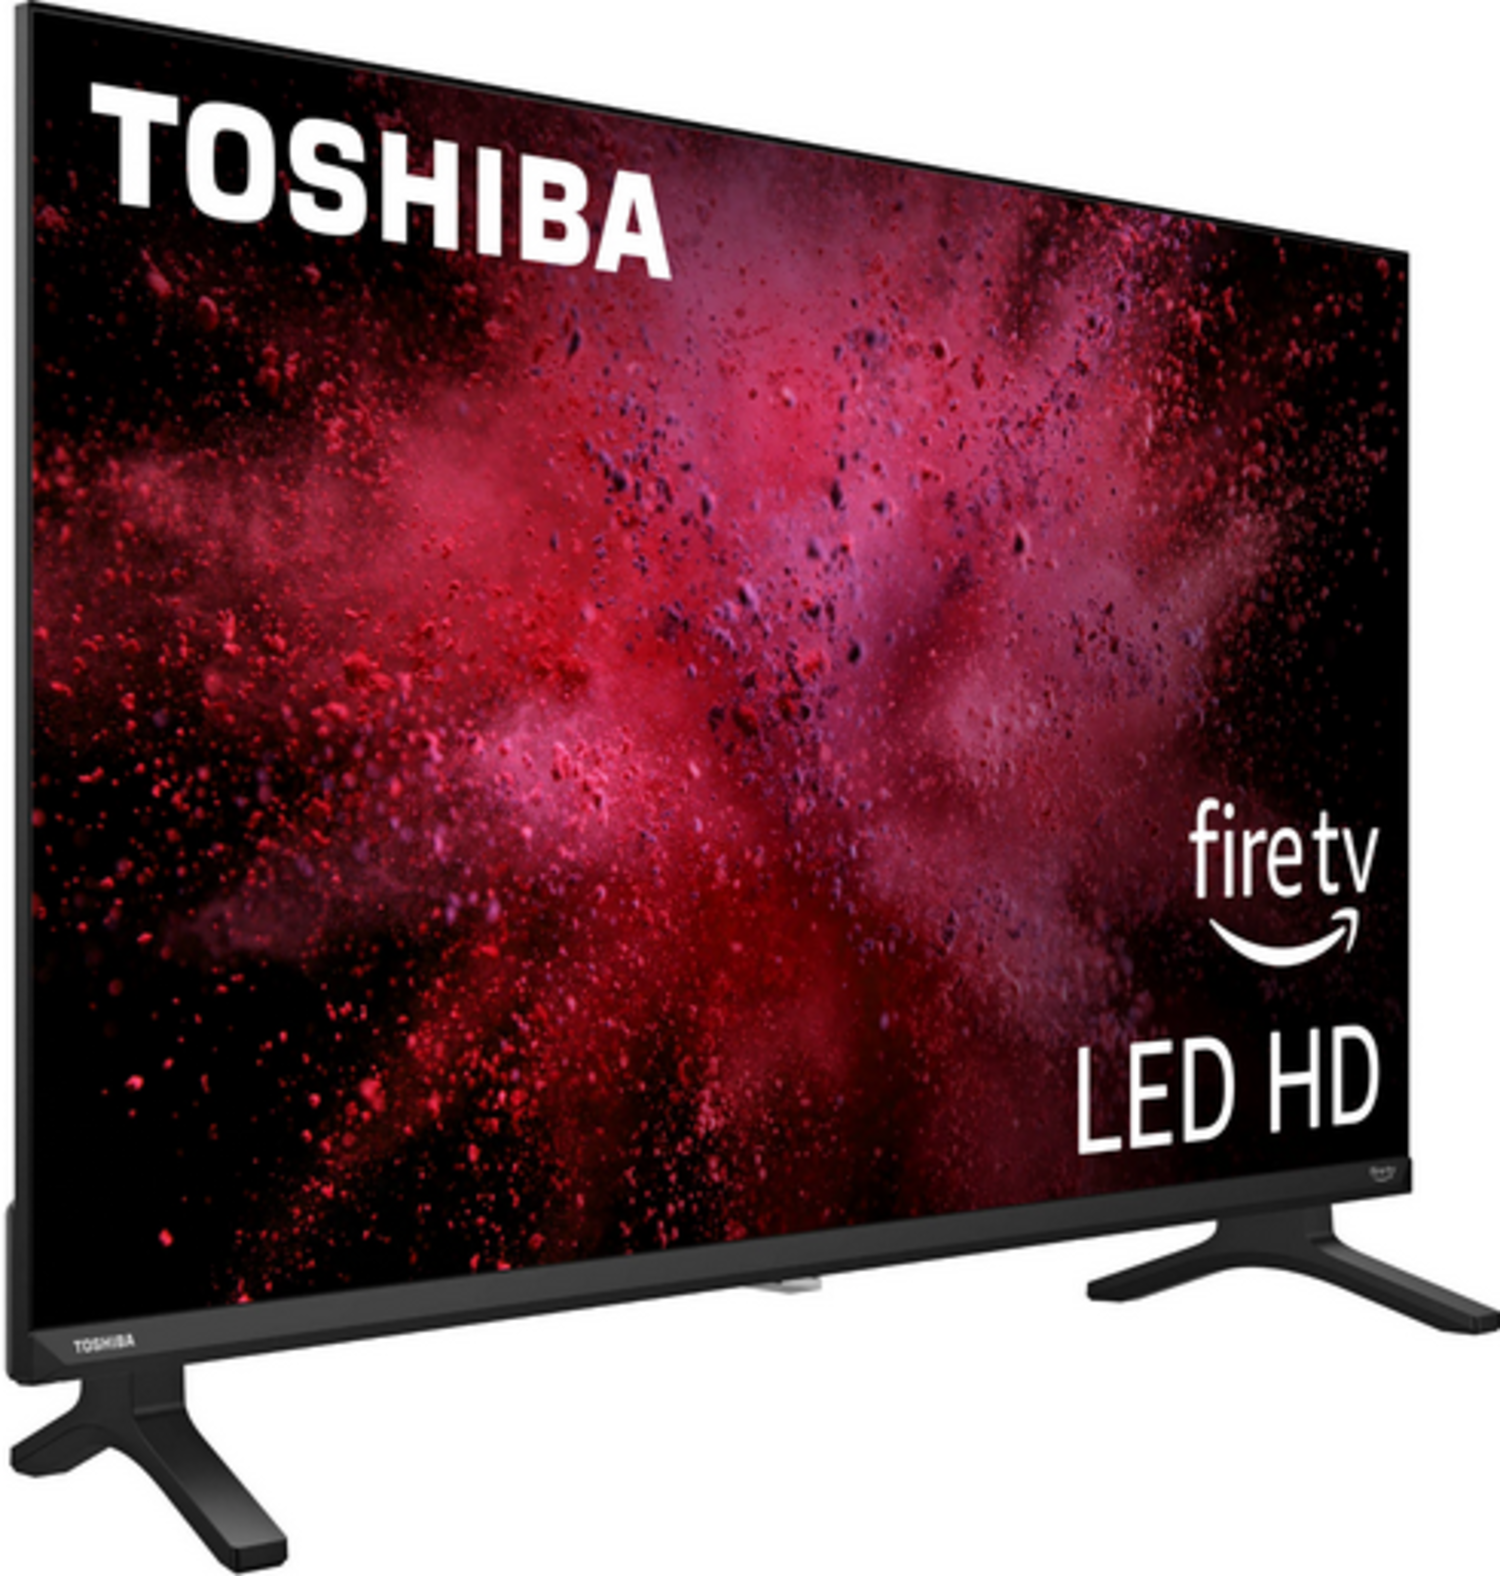 Smart Tv Toshiba V35 Series 32v35ku Lcd Fire Tv Hd 32 120v Toshiba 32V35KU